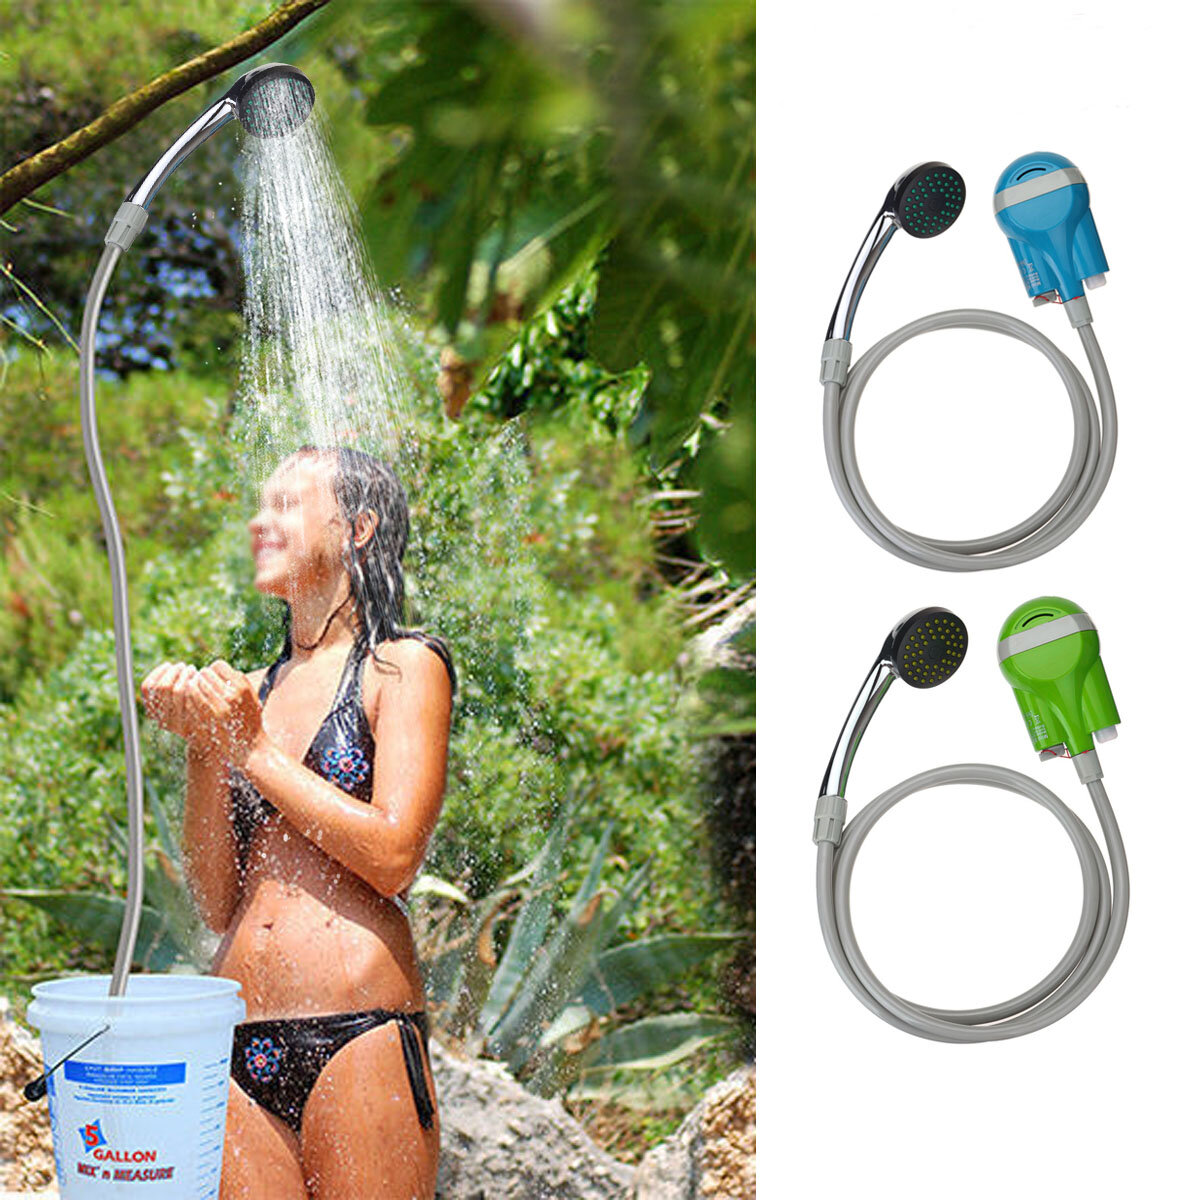 IPRee® Taşınabilir Duş Suyu Pompa USB Şarj Edilebilir Nozul El Tipi Su Spary Duş Bataryası Kampçılık Caravan Travel Outdoor Kit